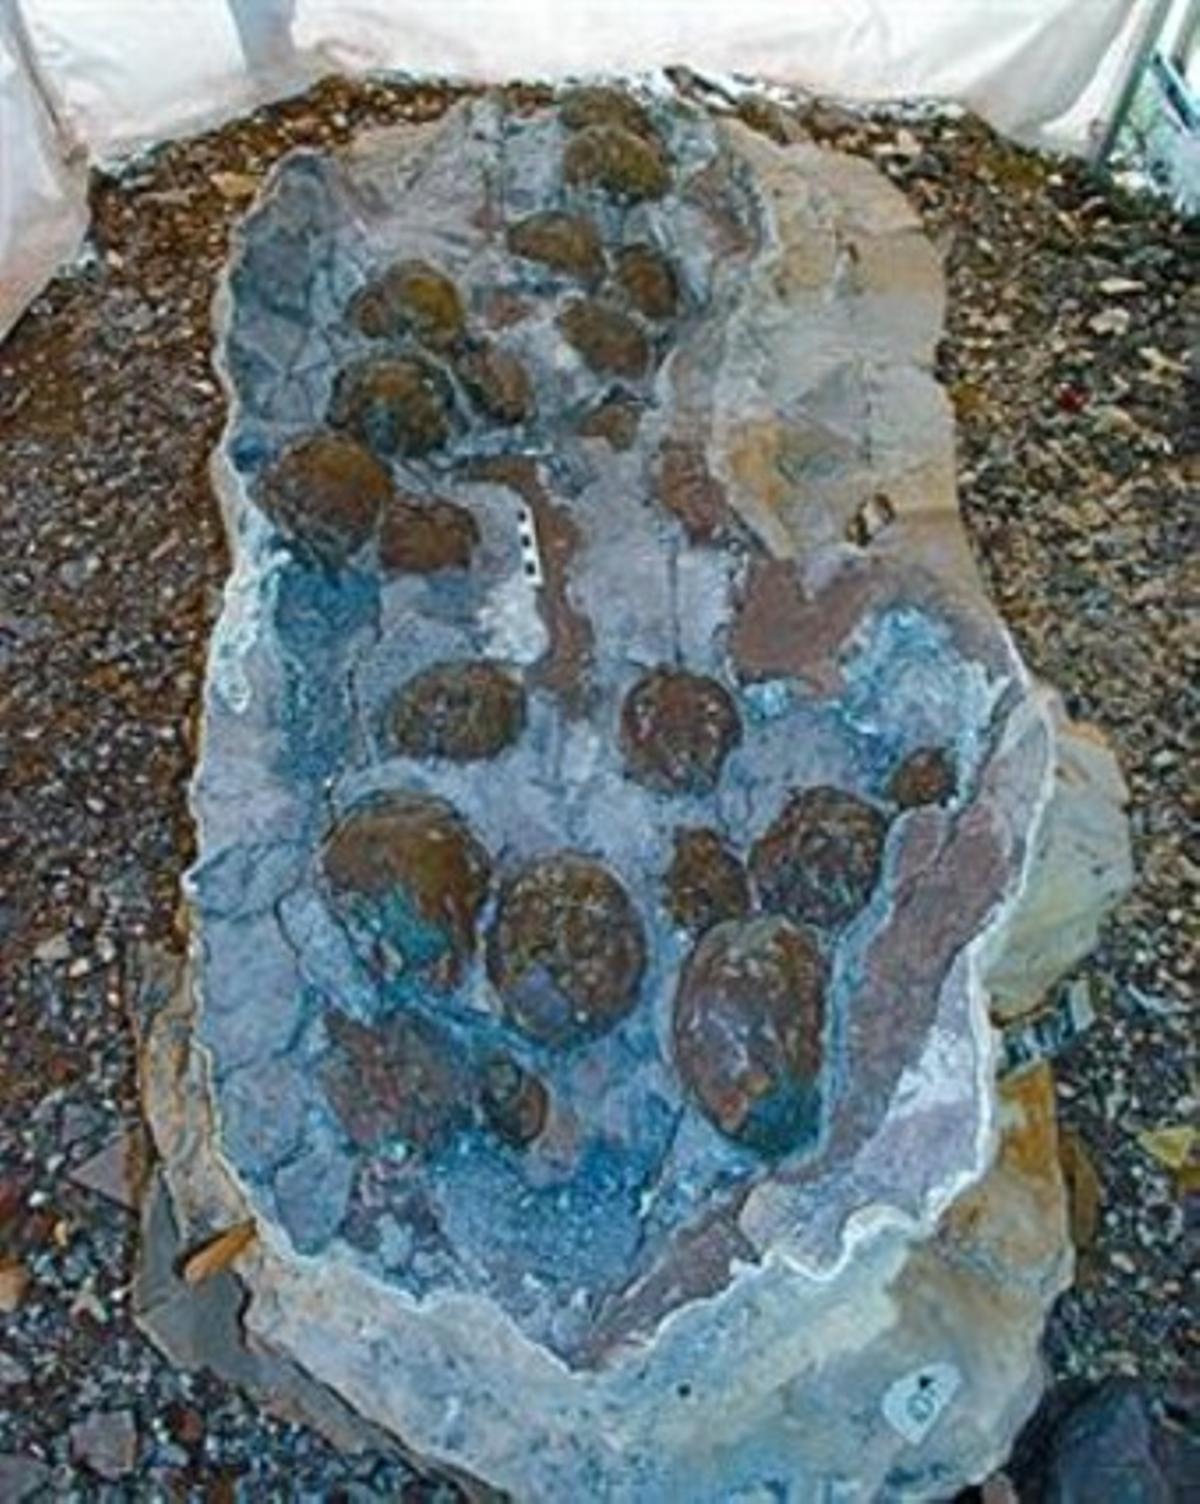 Huevos de saurópodo hallados en el Coll de Nargó.